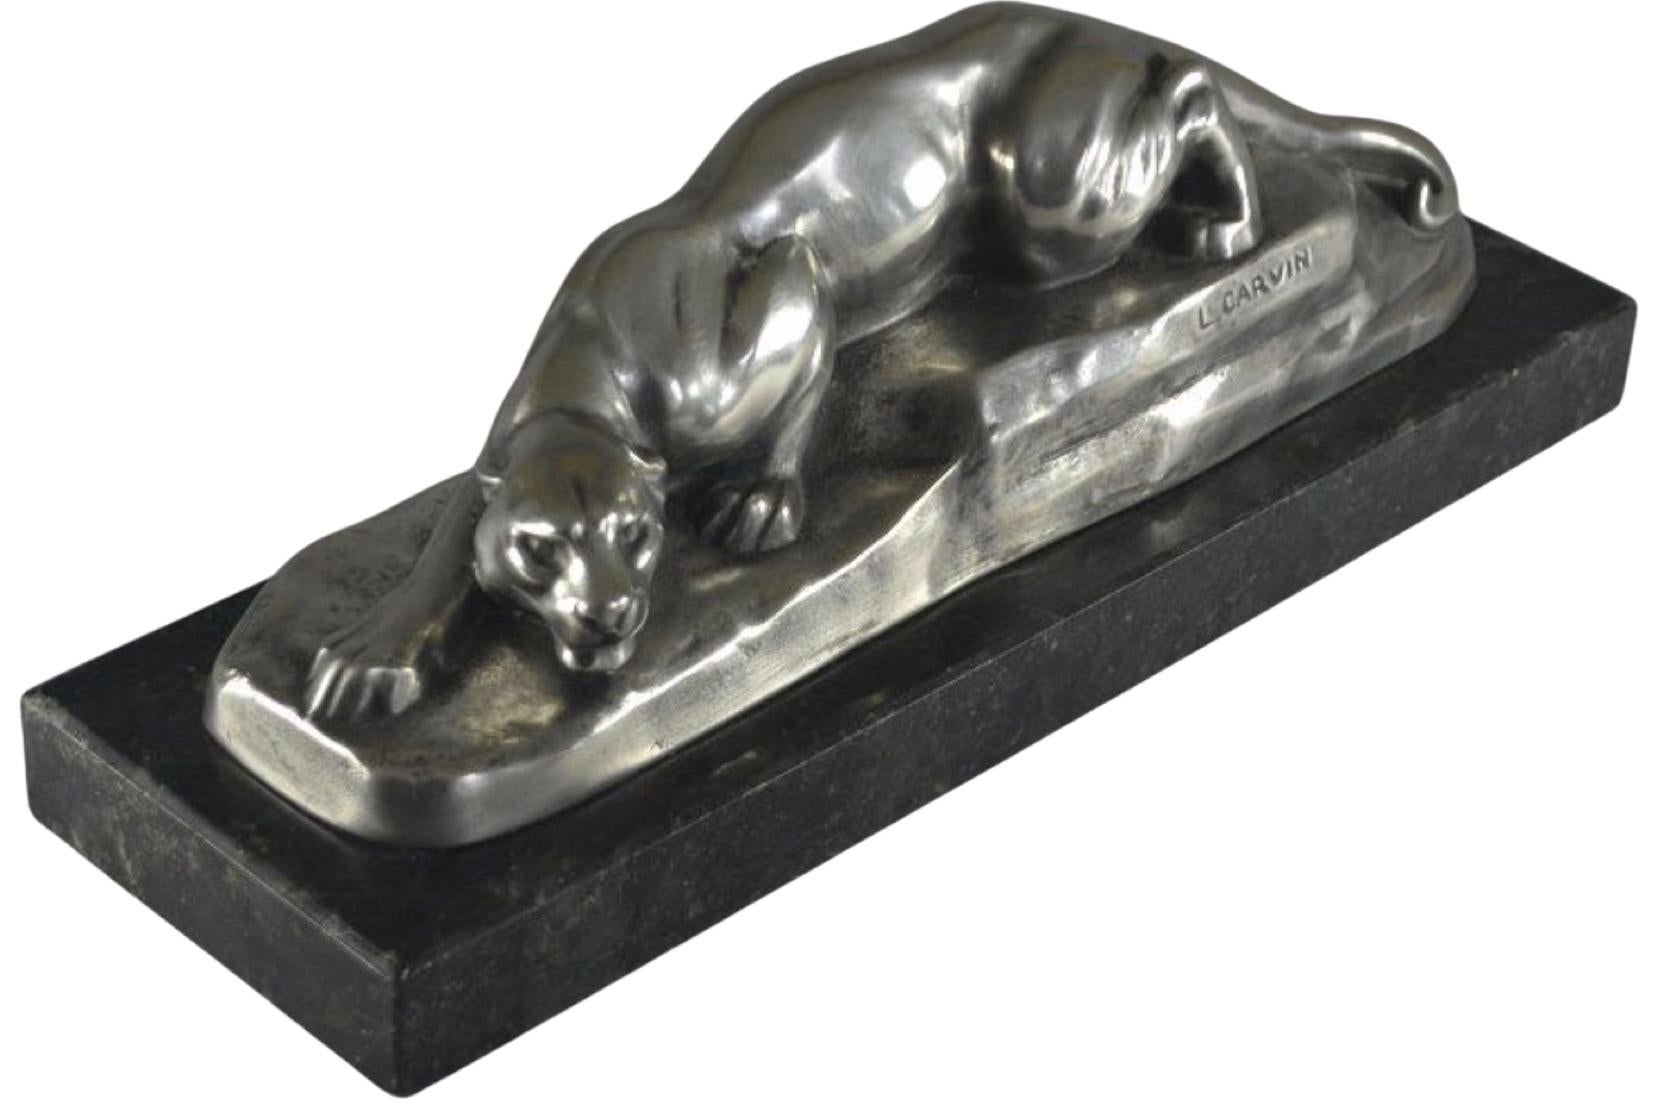 Louis Carvin Kubistischer Bronze-Panther auf schwarzem Marmorsockel, versilbert. Louis Carvin war ein bekannter französischer Bildhauer, der für seine Beiträge zur kubistischen Bewegung bekannt ist. Er wurde am 14. Januar 1875 in Paris, Frankreich,